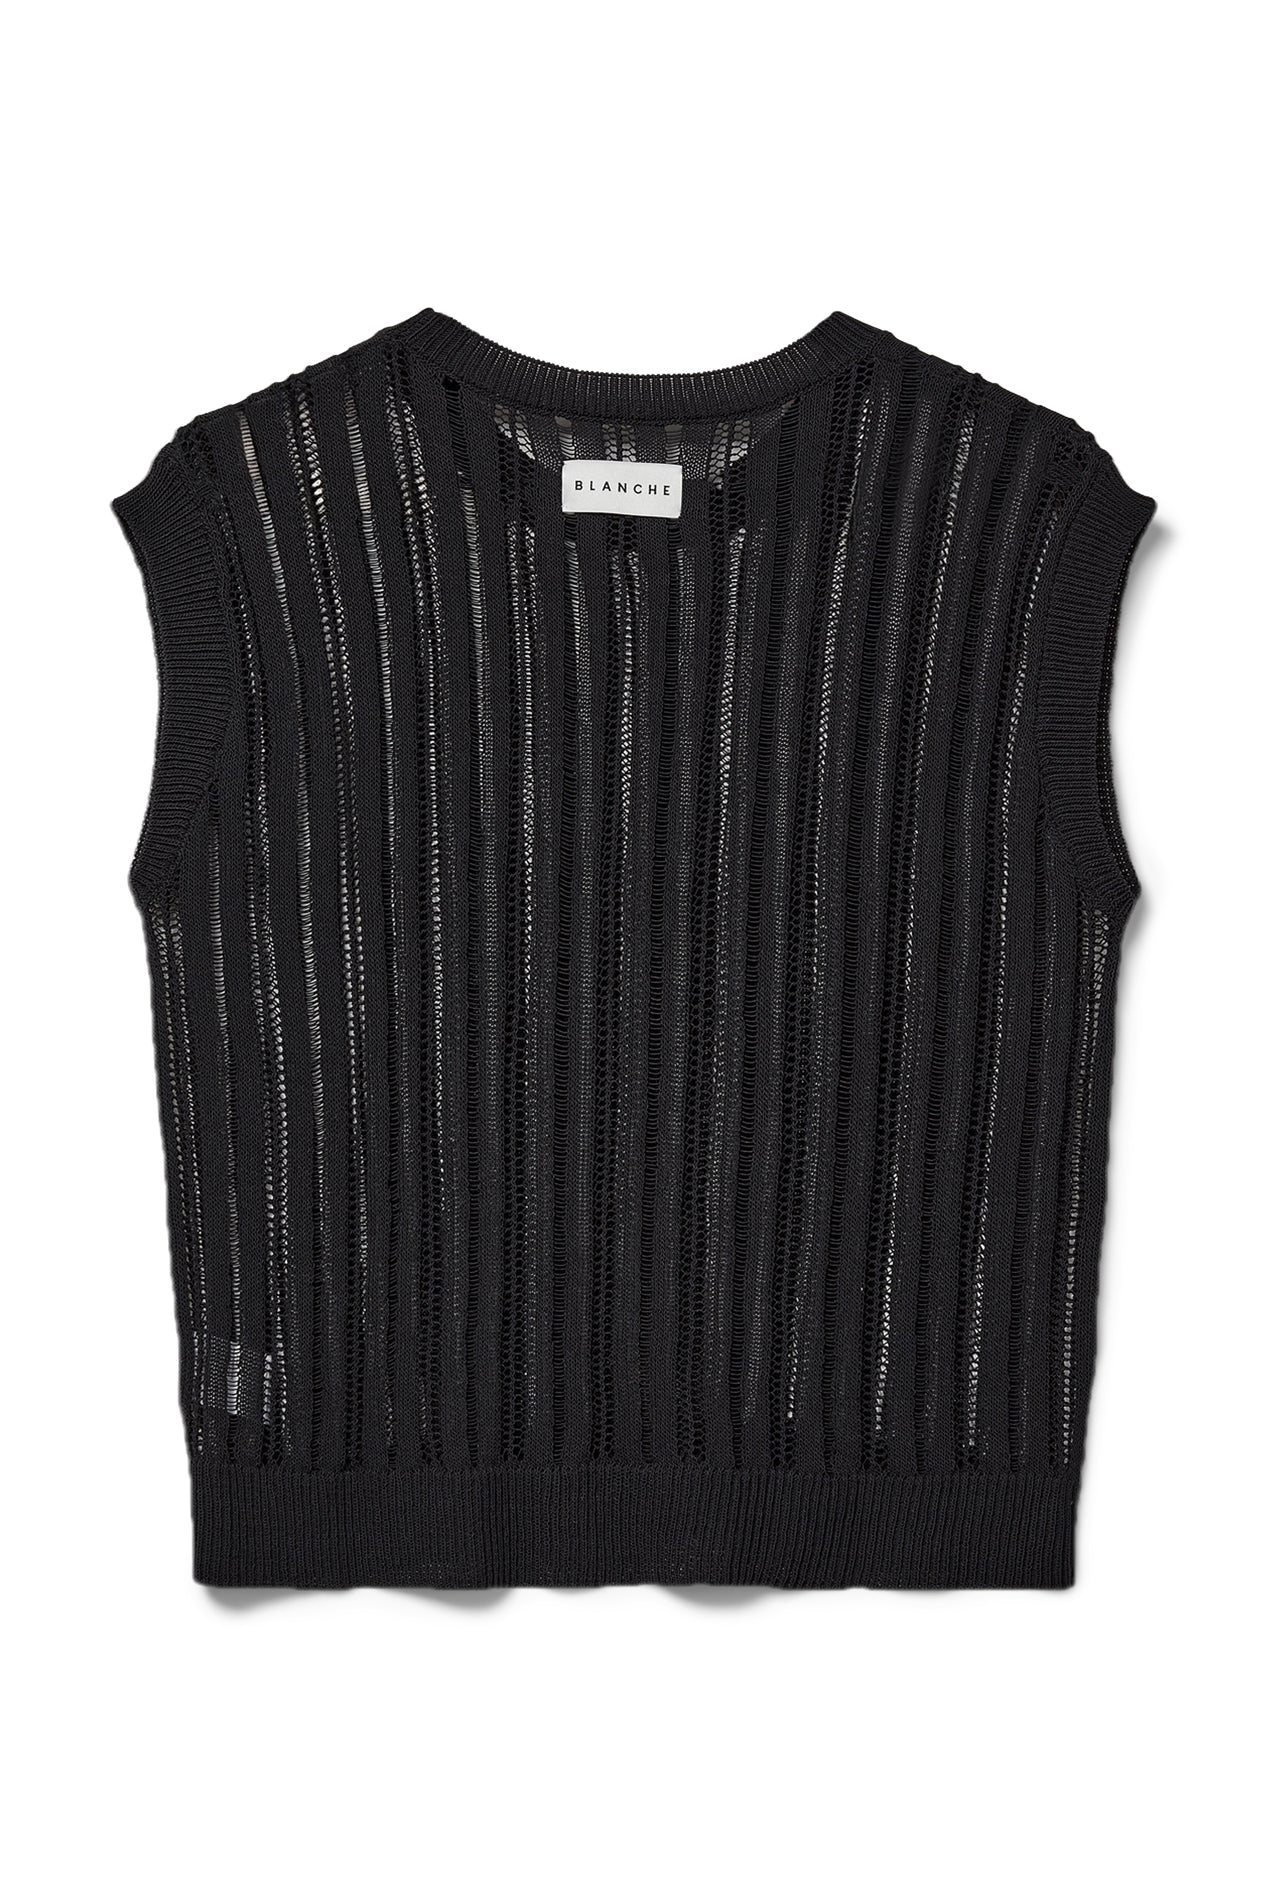 BLANCHE Copenhagen Tortue-BL Vest Knitwear 99 Black